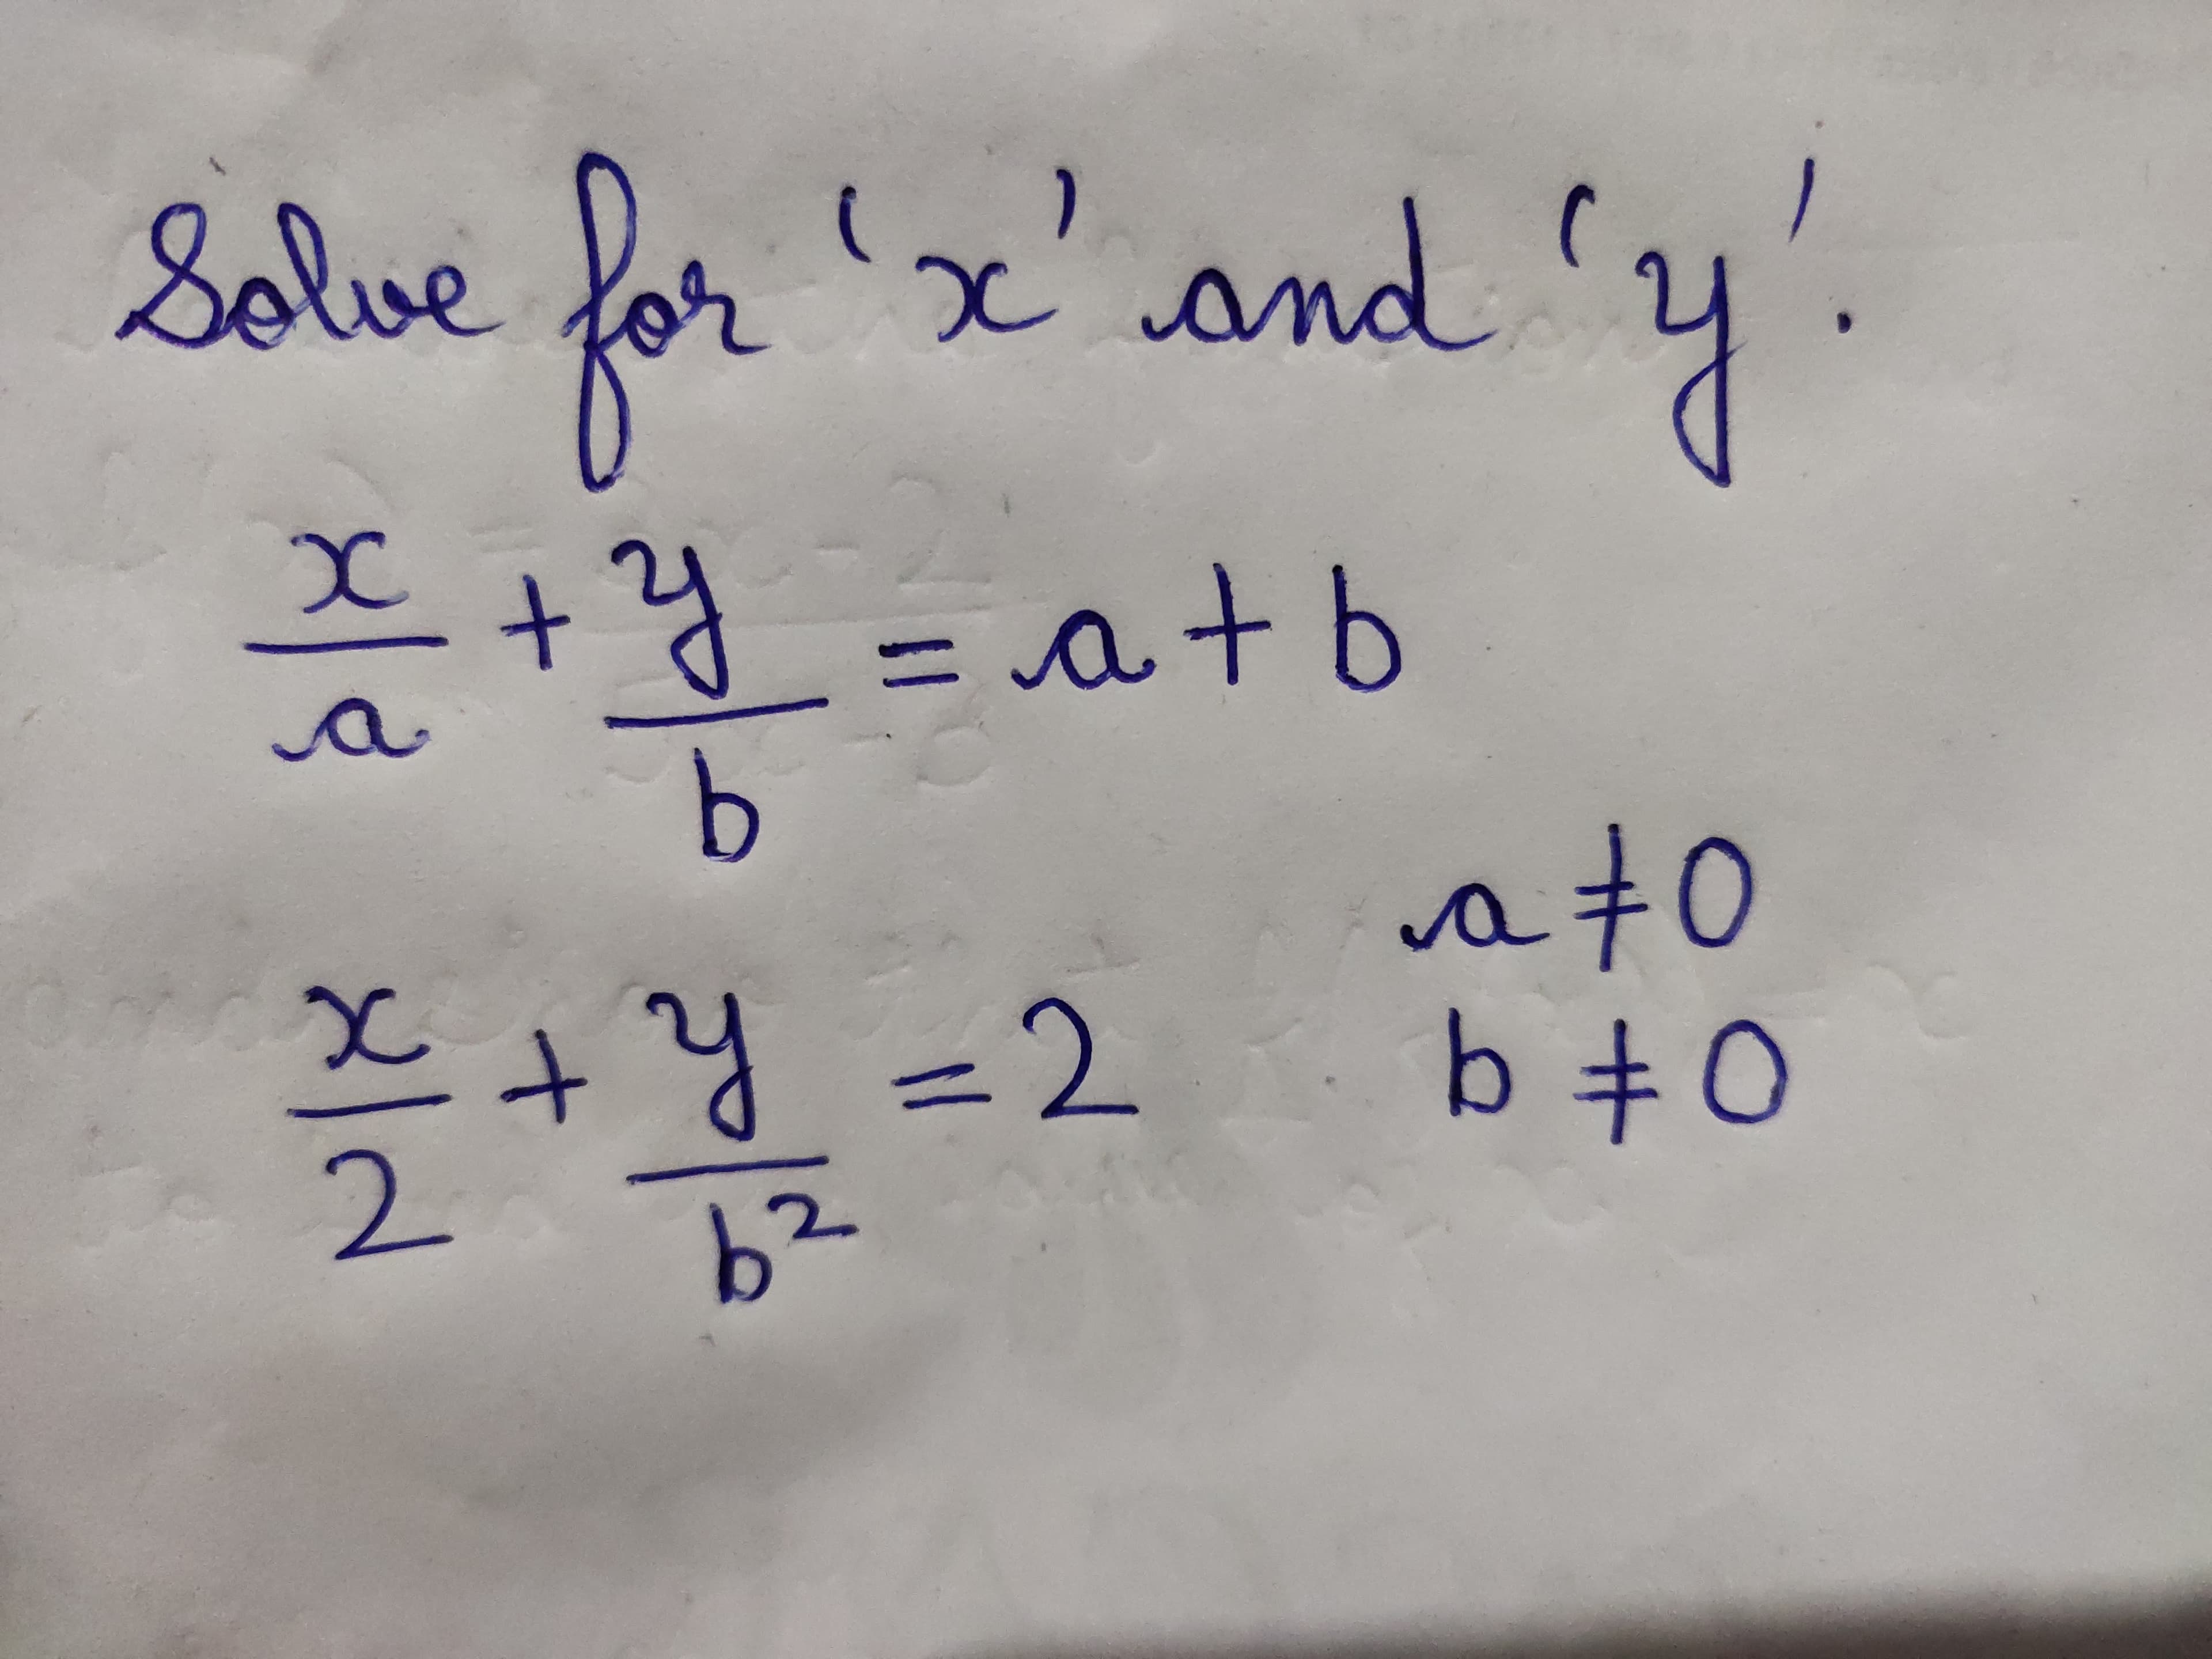 for
Solve 'x'nd 'y's
t'y!
and'
+y =a+ b
a t0
Y=2 b +0
b2
